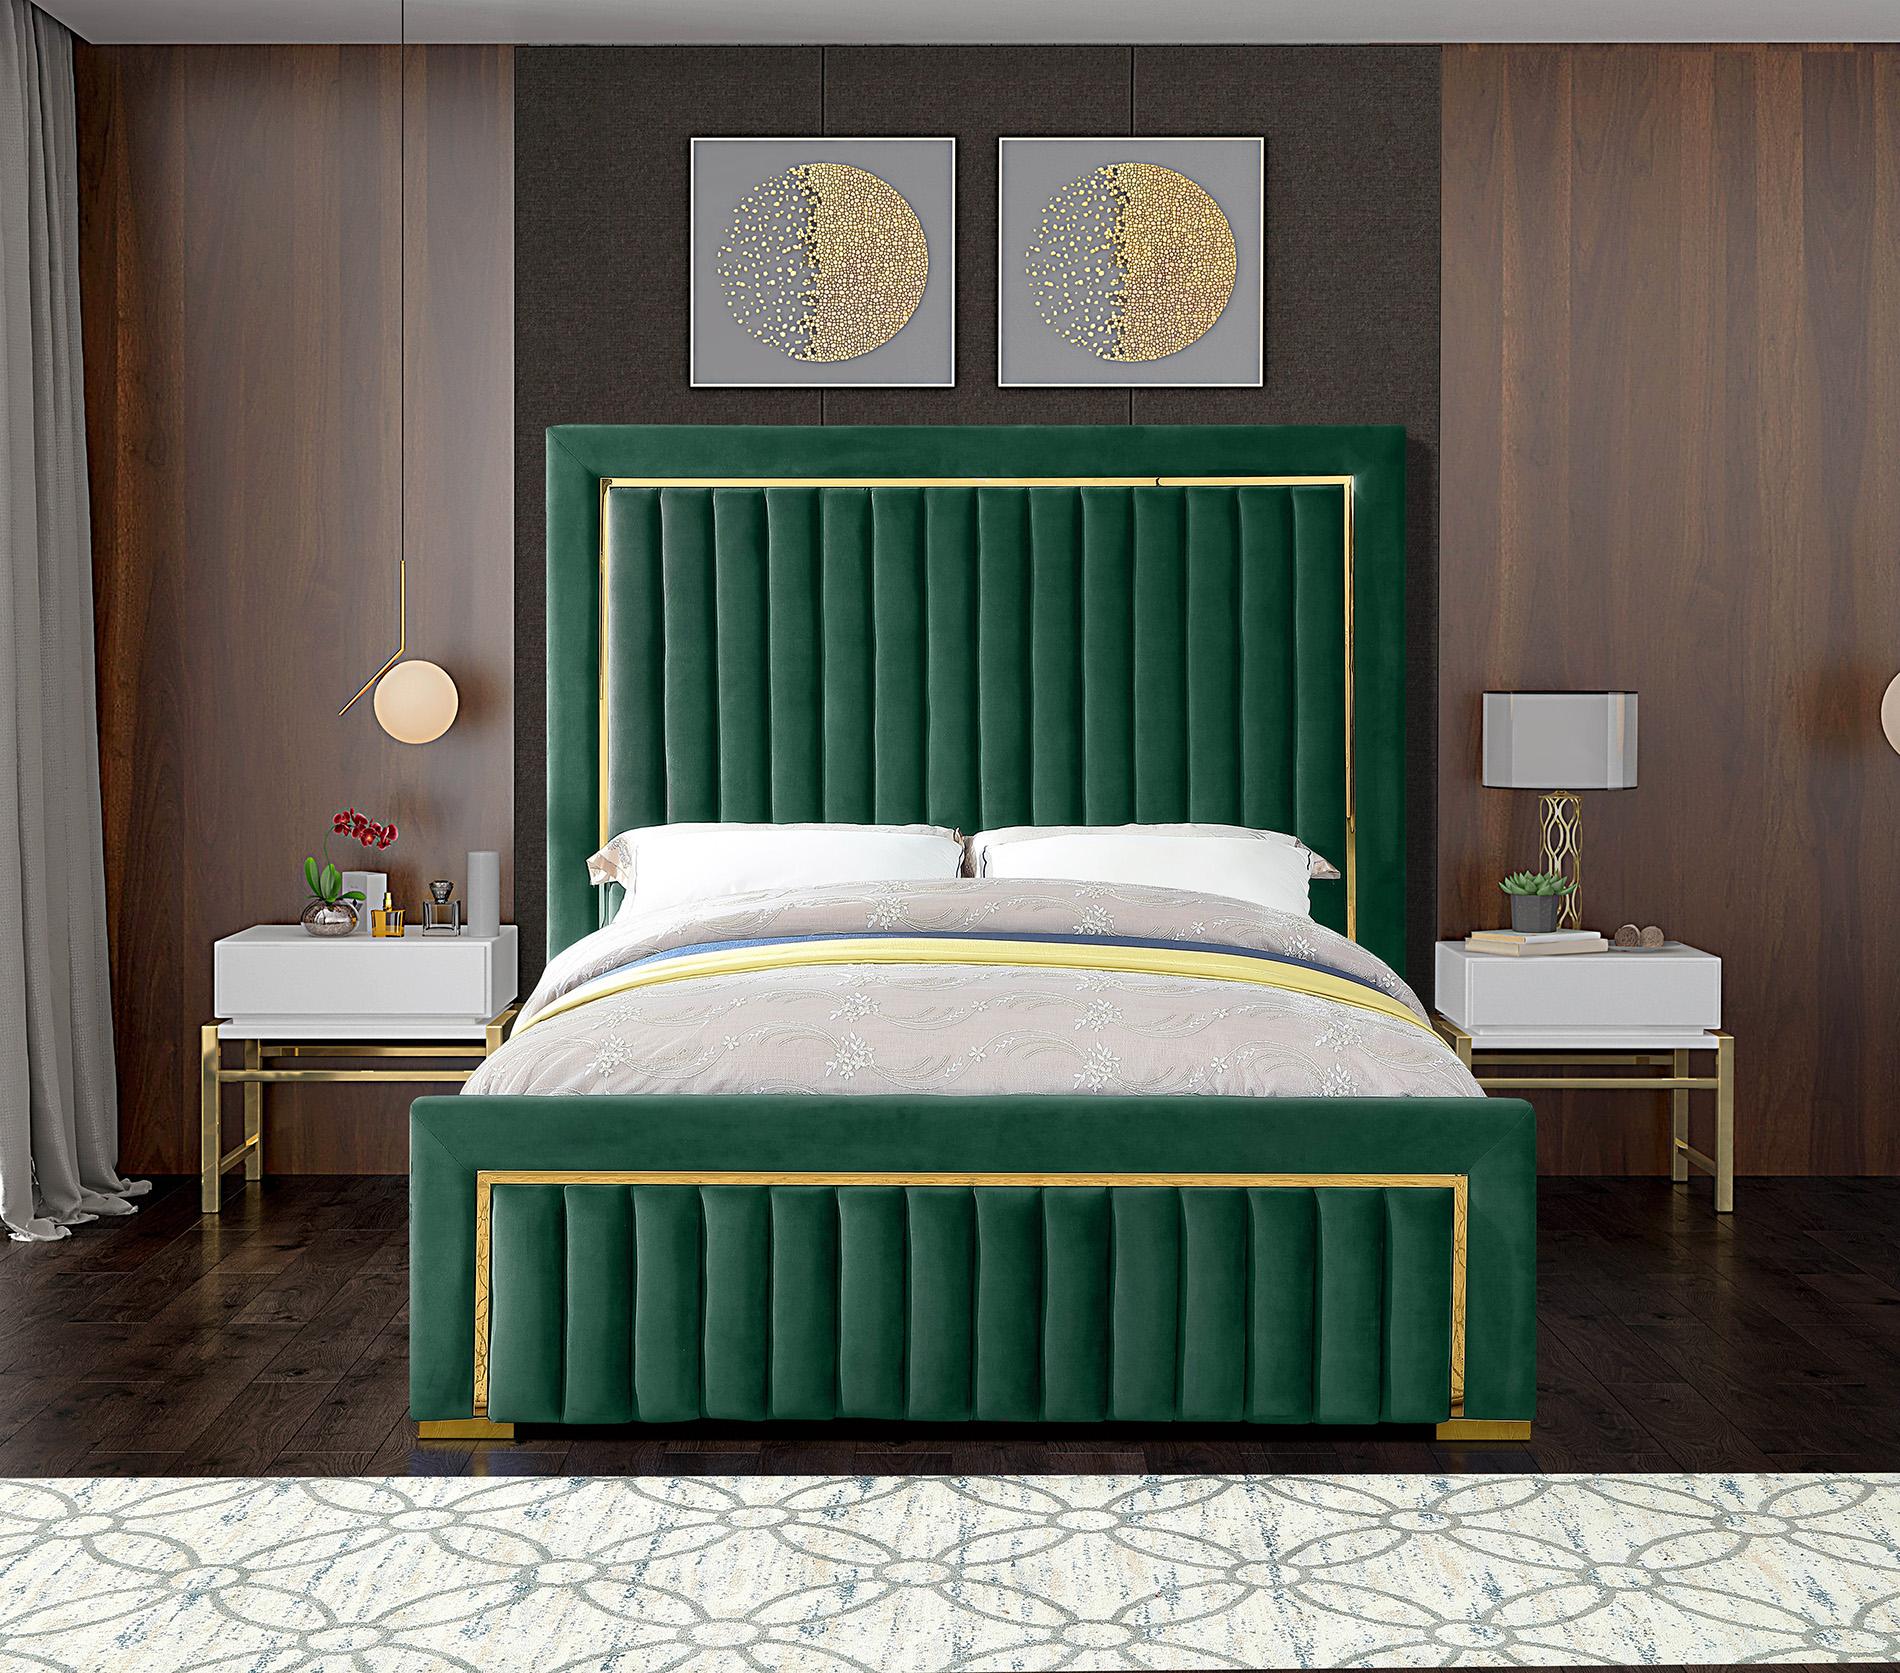 

    
Meridian Furniture DOLCE Green-K Platform Bed Green DolceGreen-K
